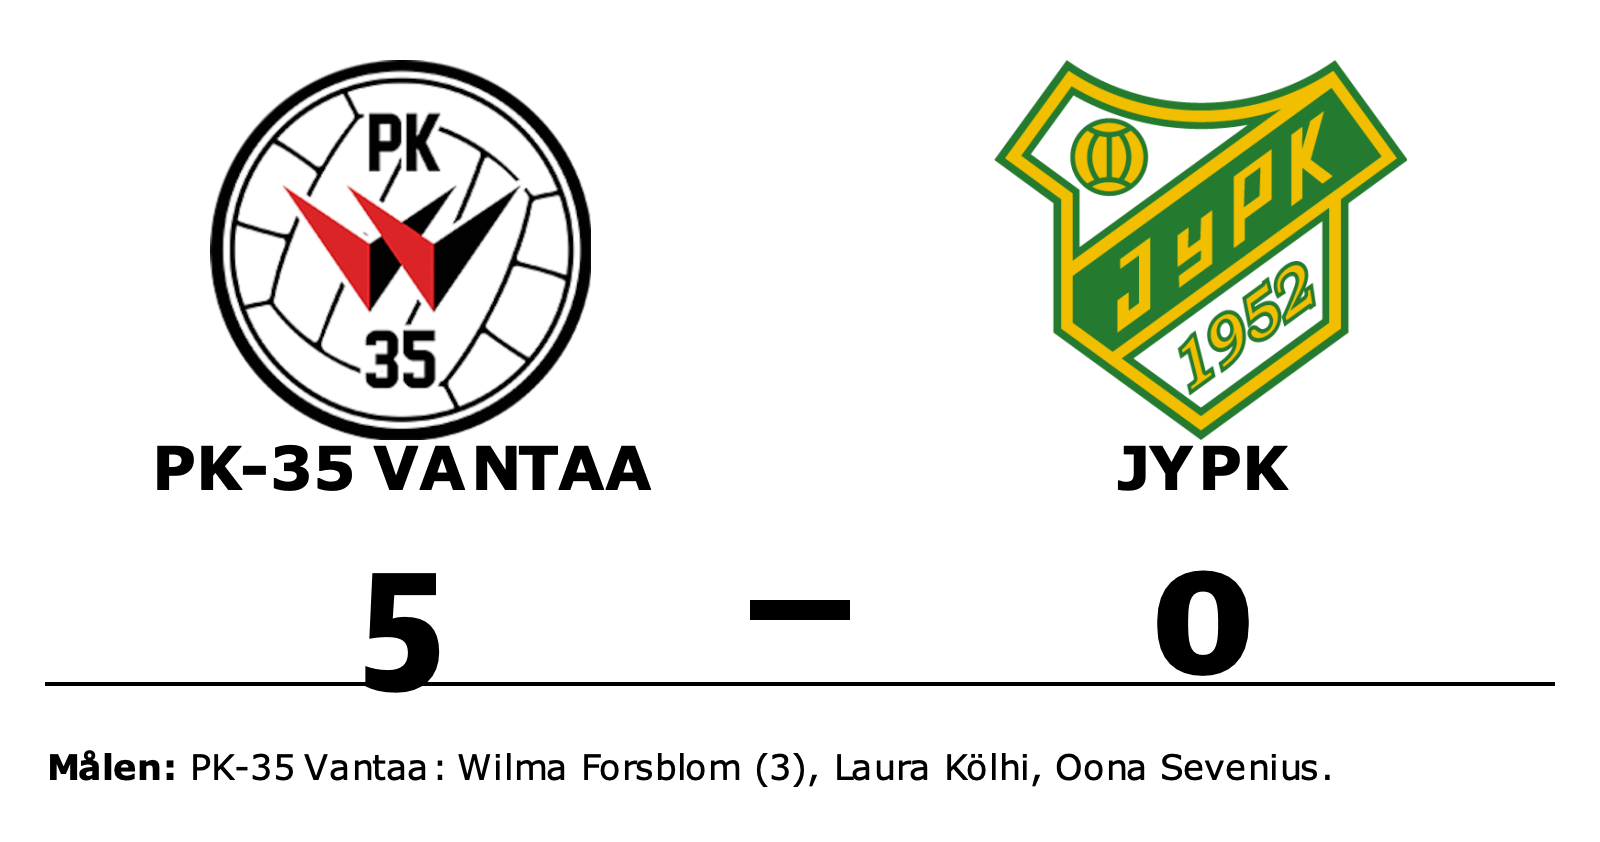 PK-35 Vantaa vann mot JyPK